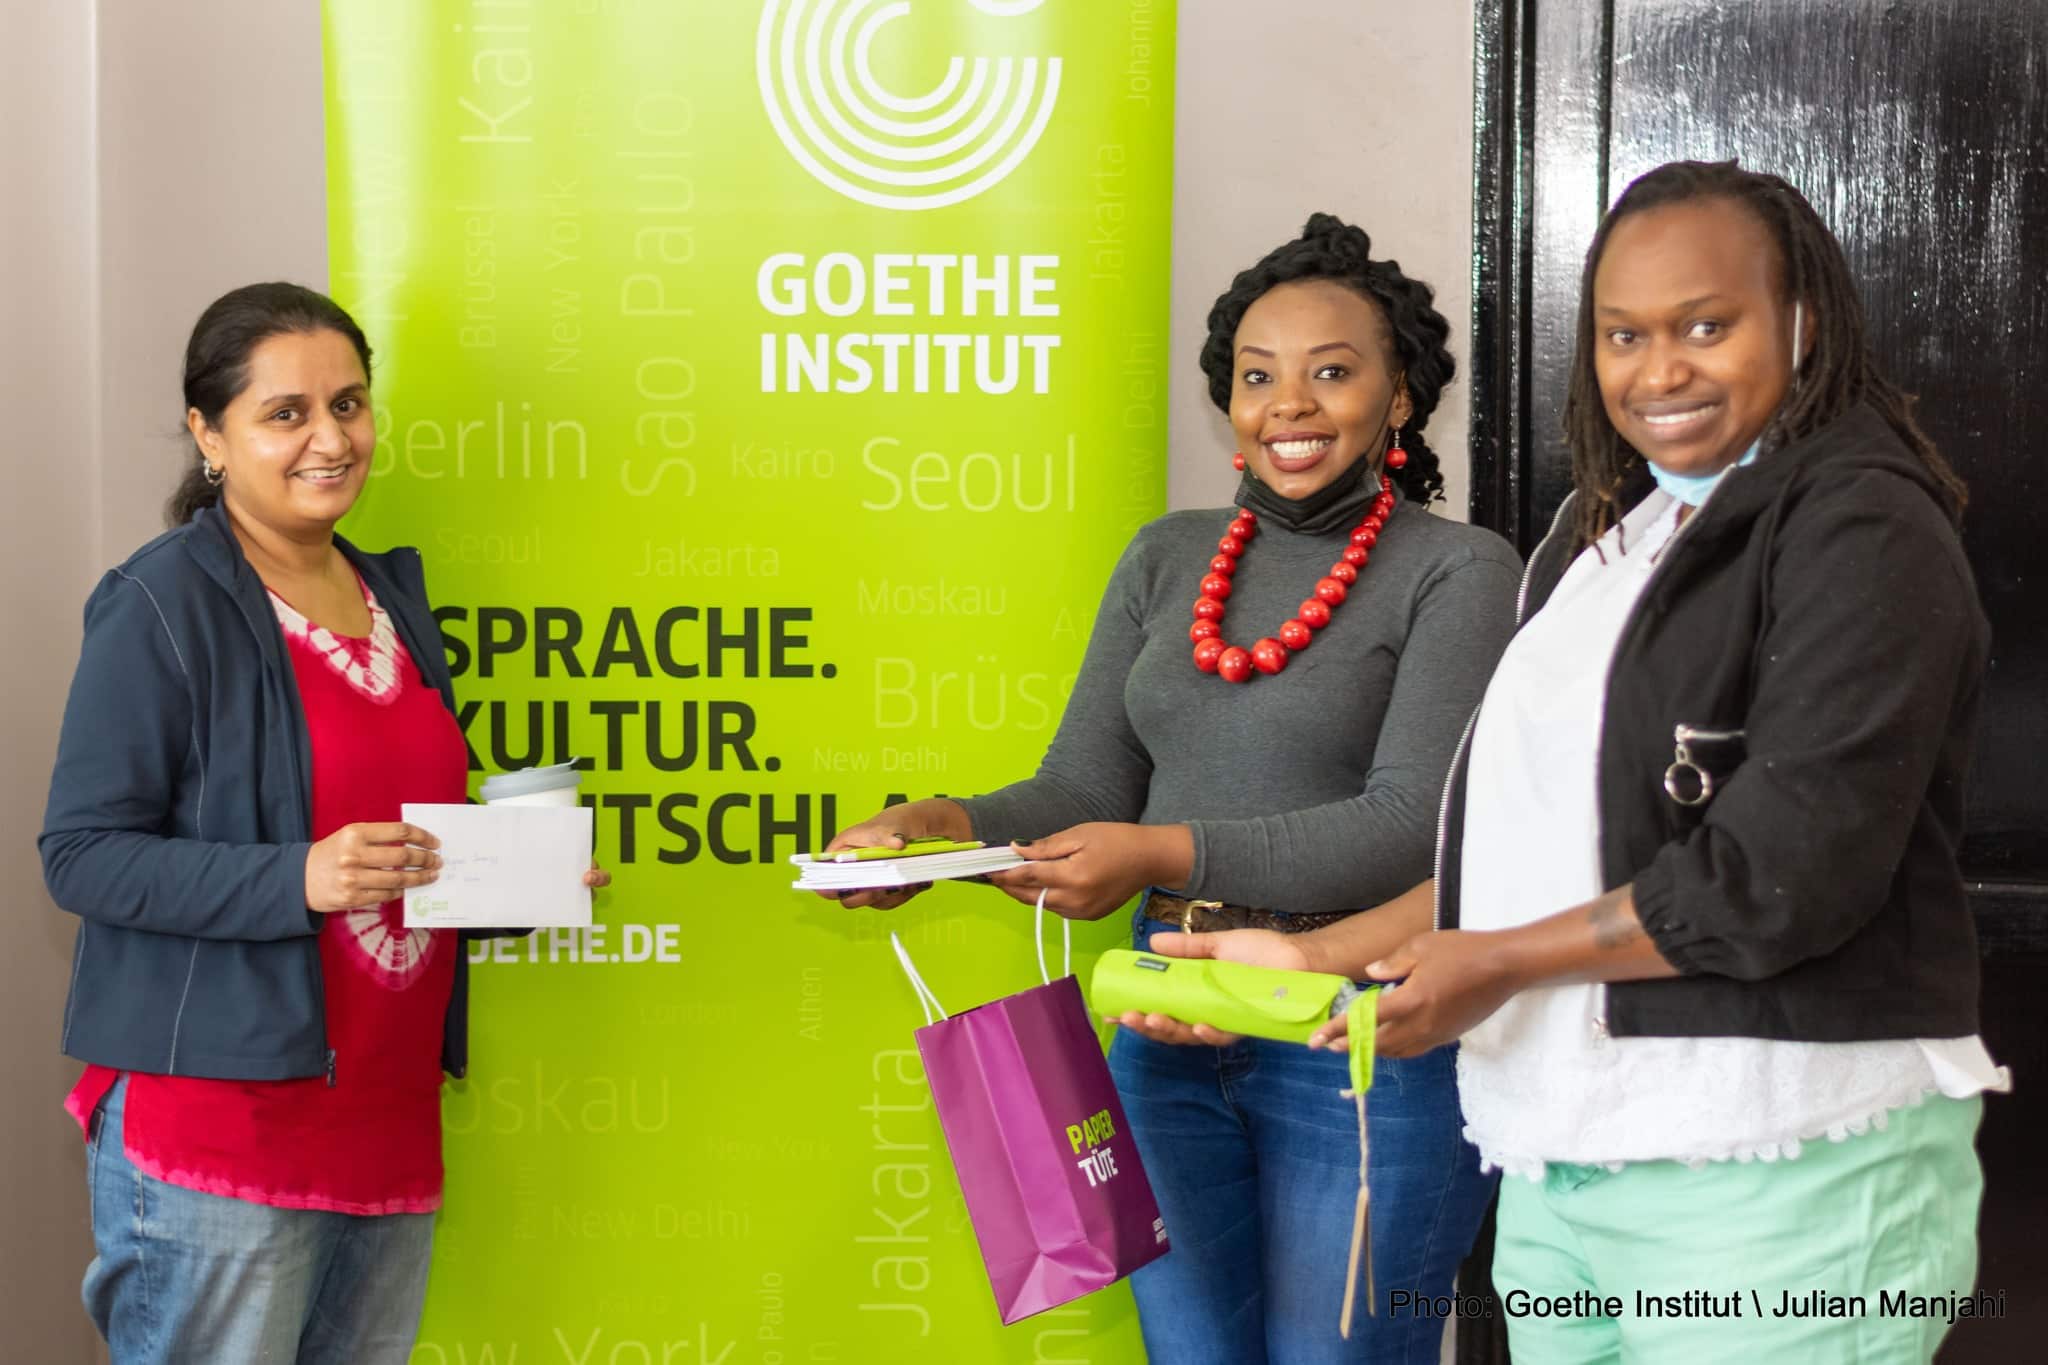 Goethe – Institut